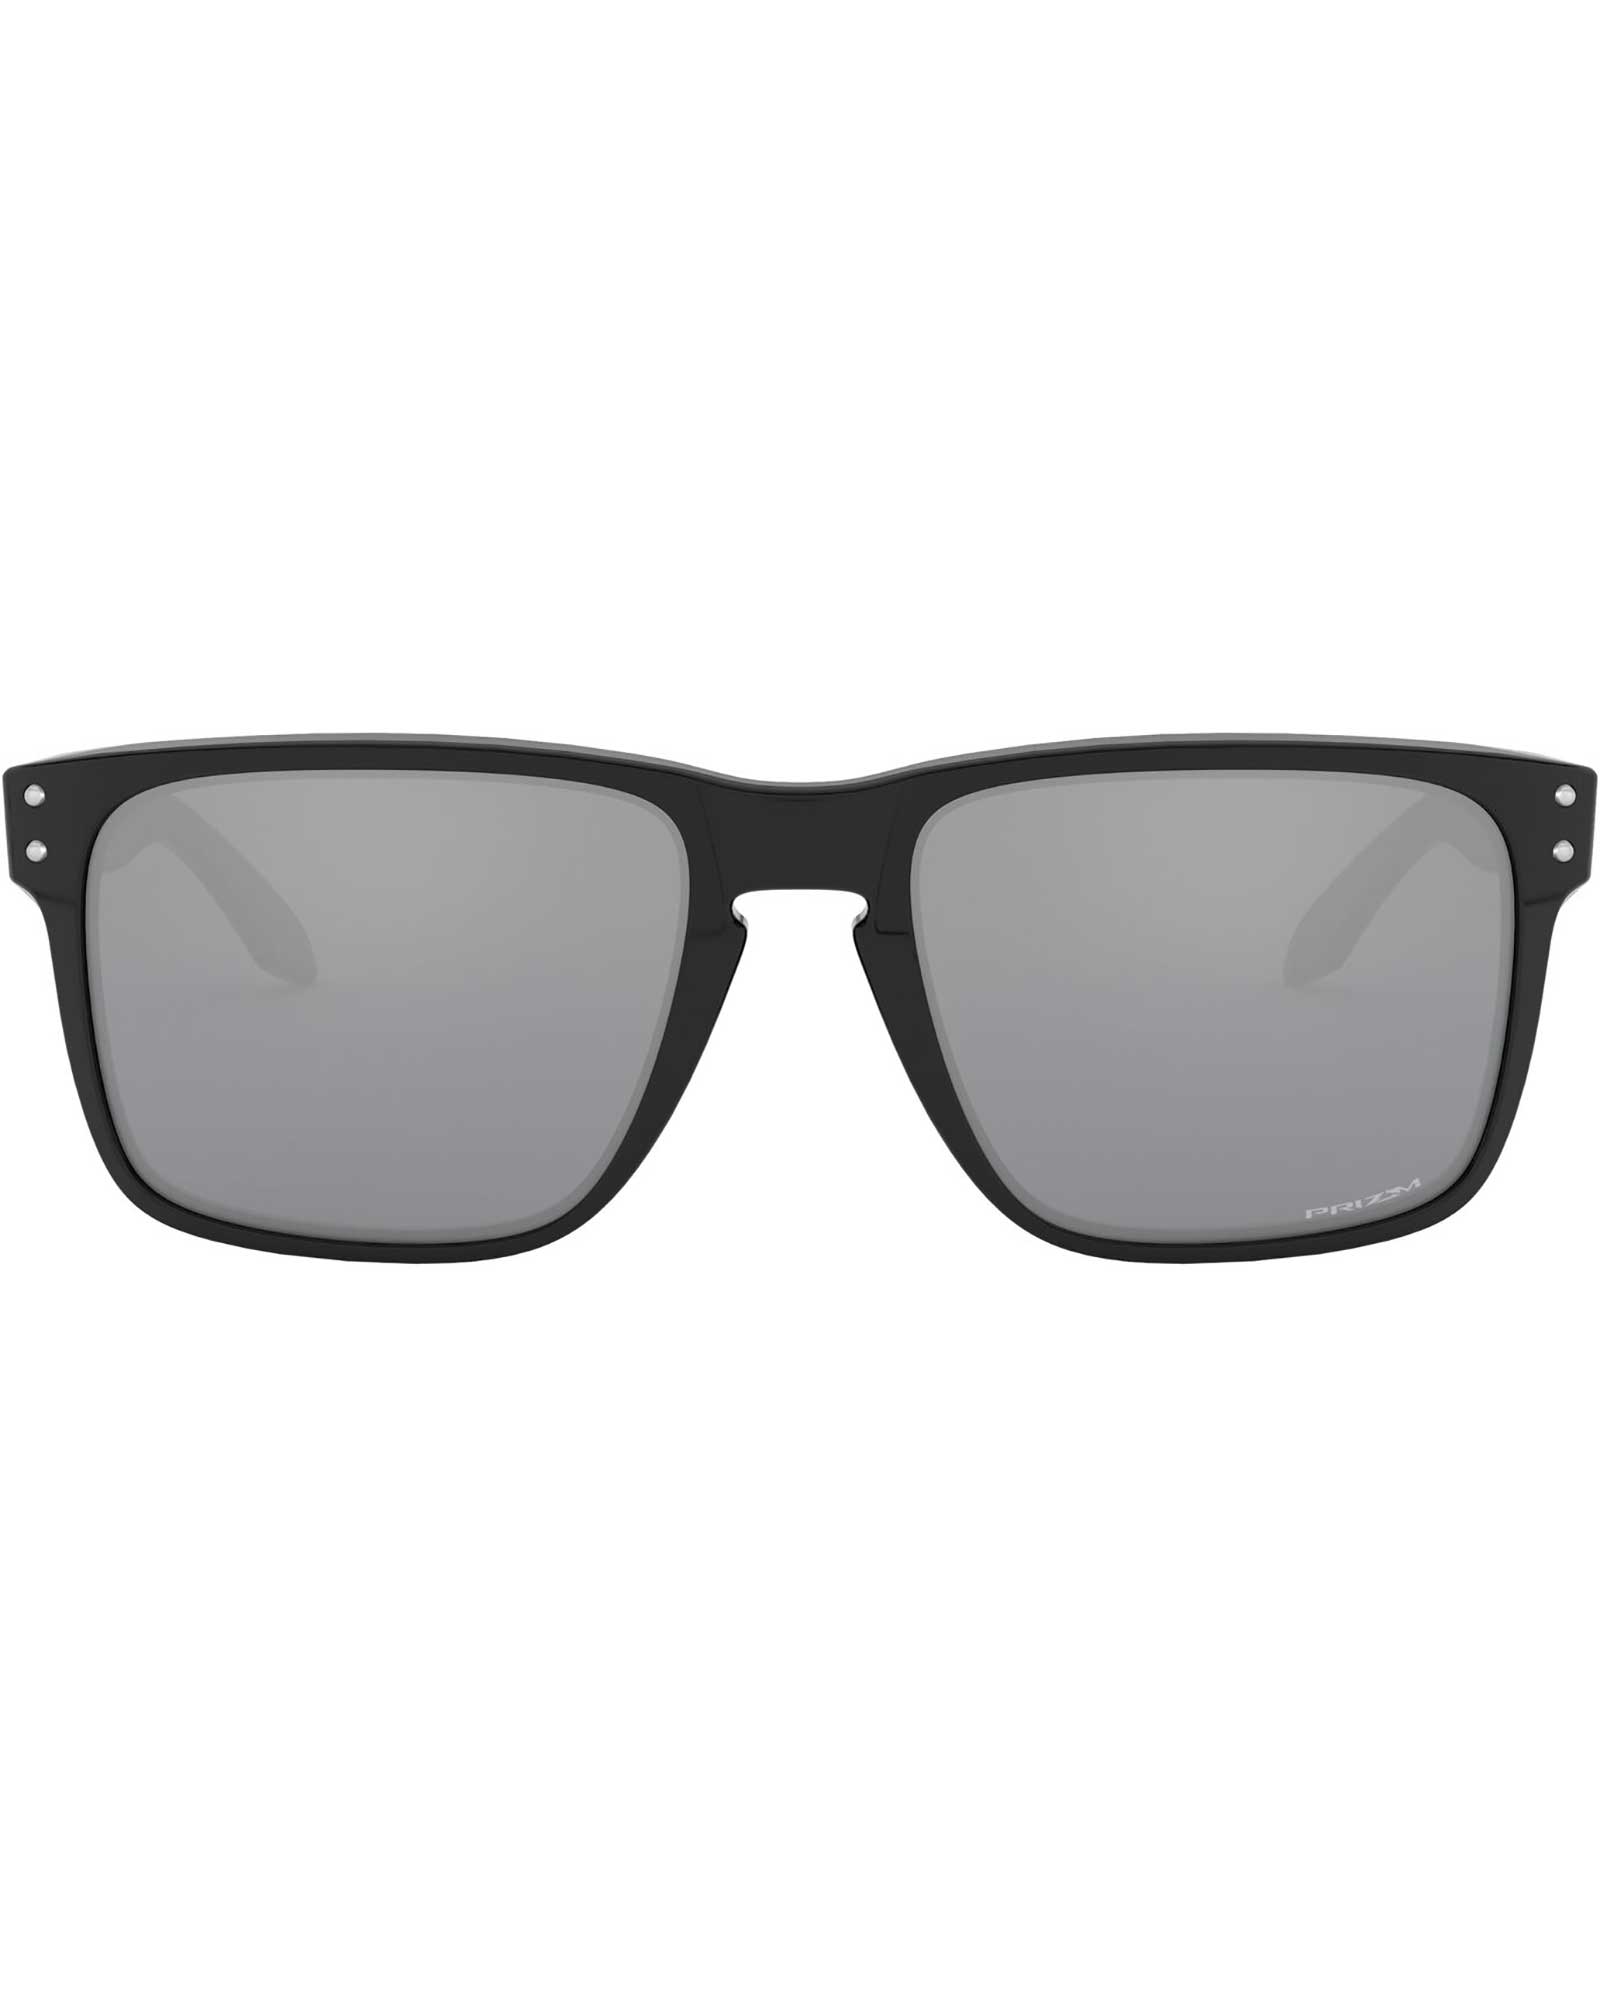 Oakley Holbrook XL Polished Black / Prizm Black Sunglasses - Polished Black